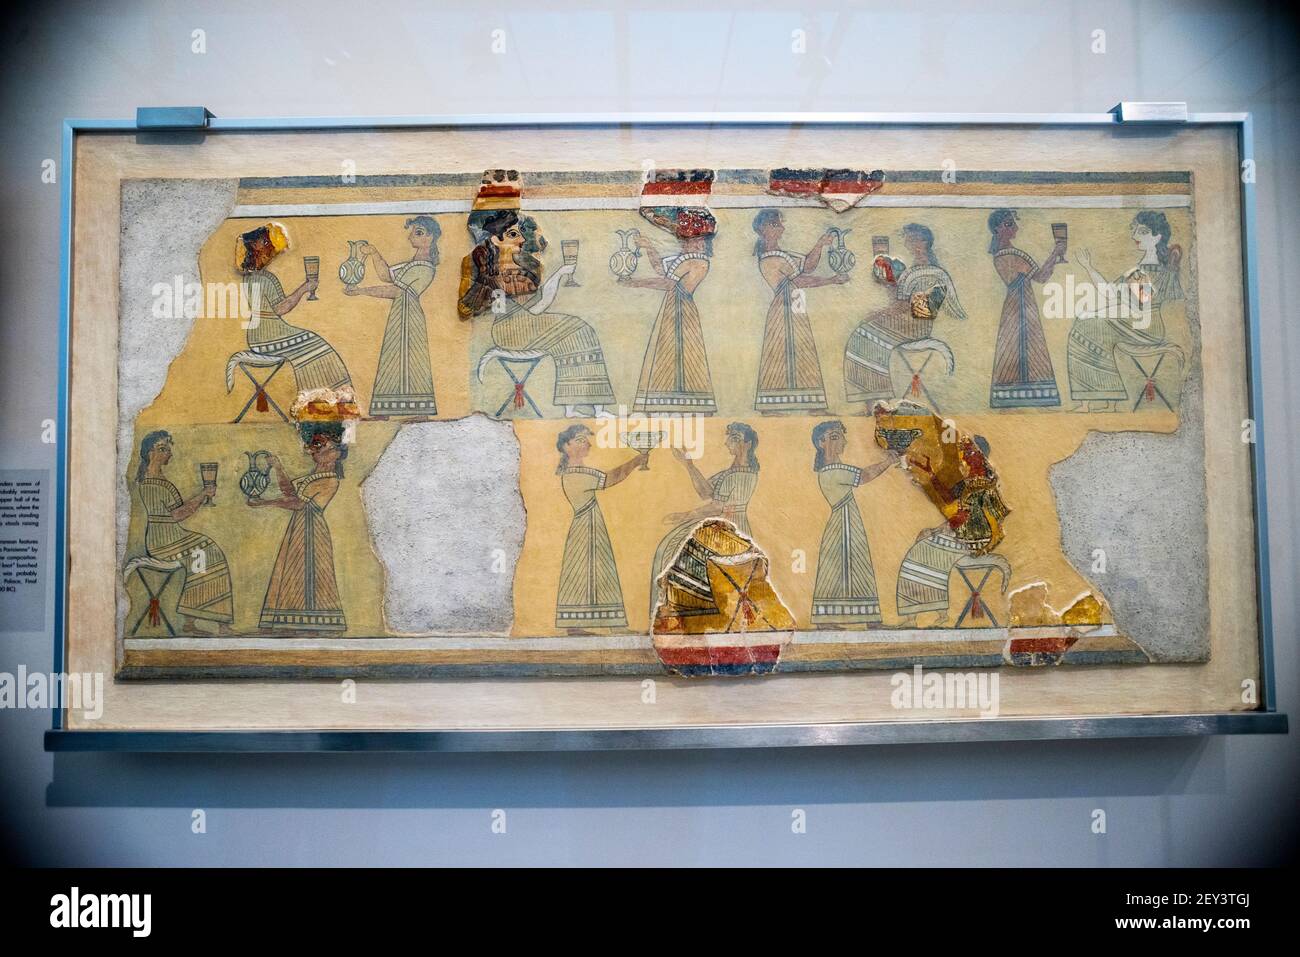 Das Archäologische Museum von Heraklion minoische Kunst und kretische Artefakte von der prähistorischen bis zur spätrömischen Zeit, Kreta, Griechenland. Stockfoto